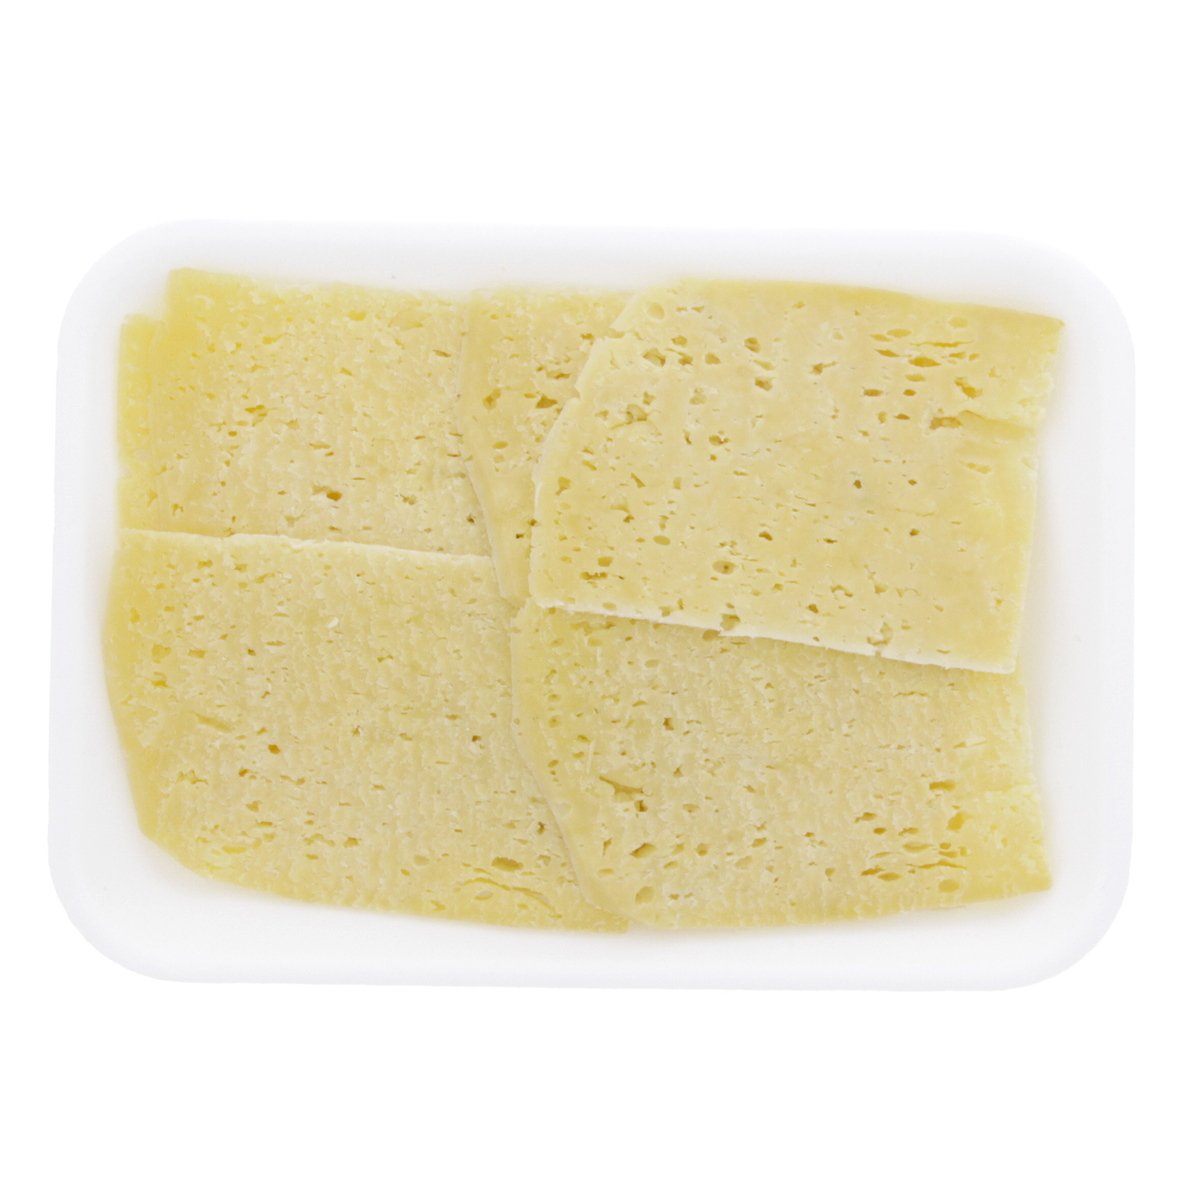 اشتري قم بشراء جبنة رومي مصرية قديمة 300 جم تقريبا Online at Best Price من الموقع - من لولو هايبر ماركت White Cheese في مصر